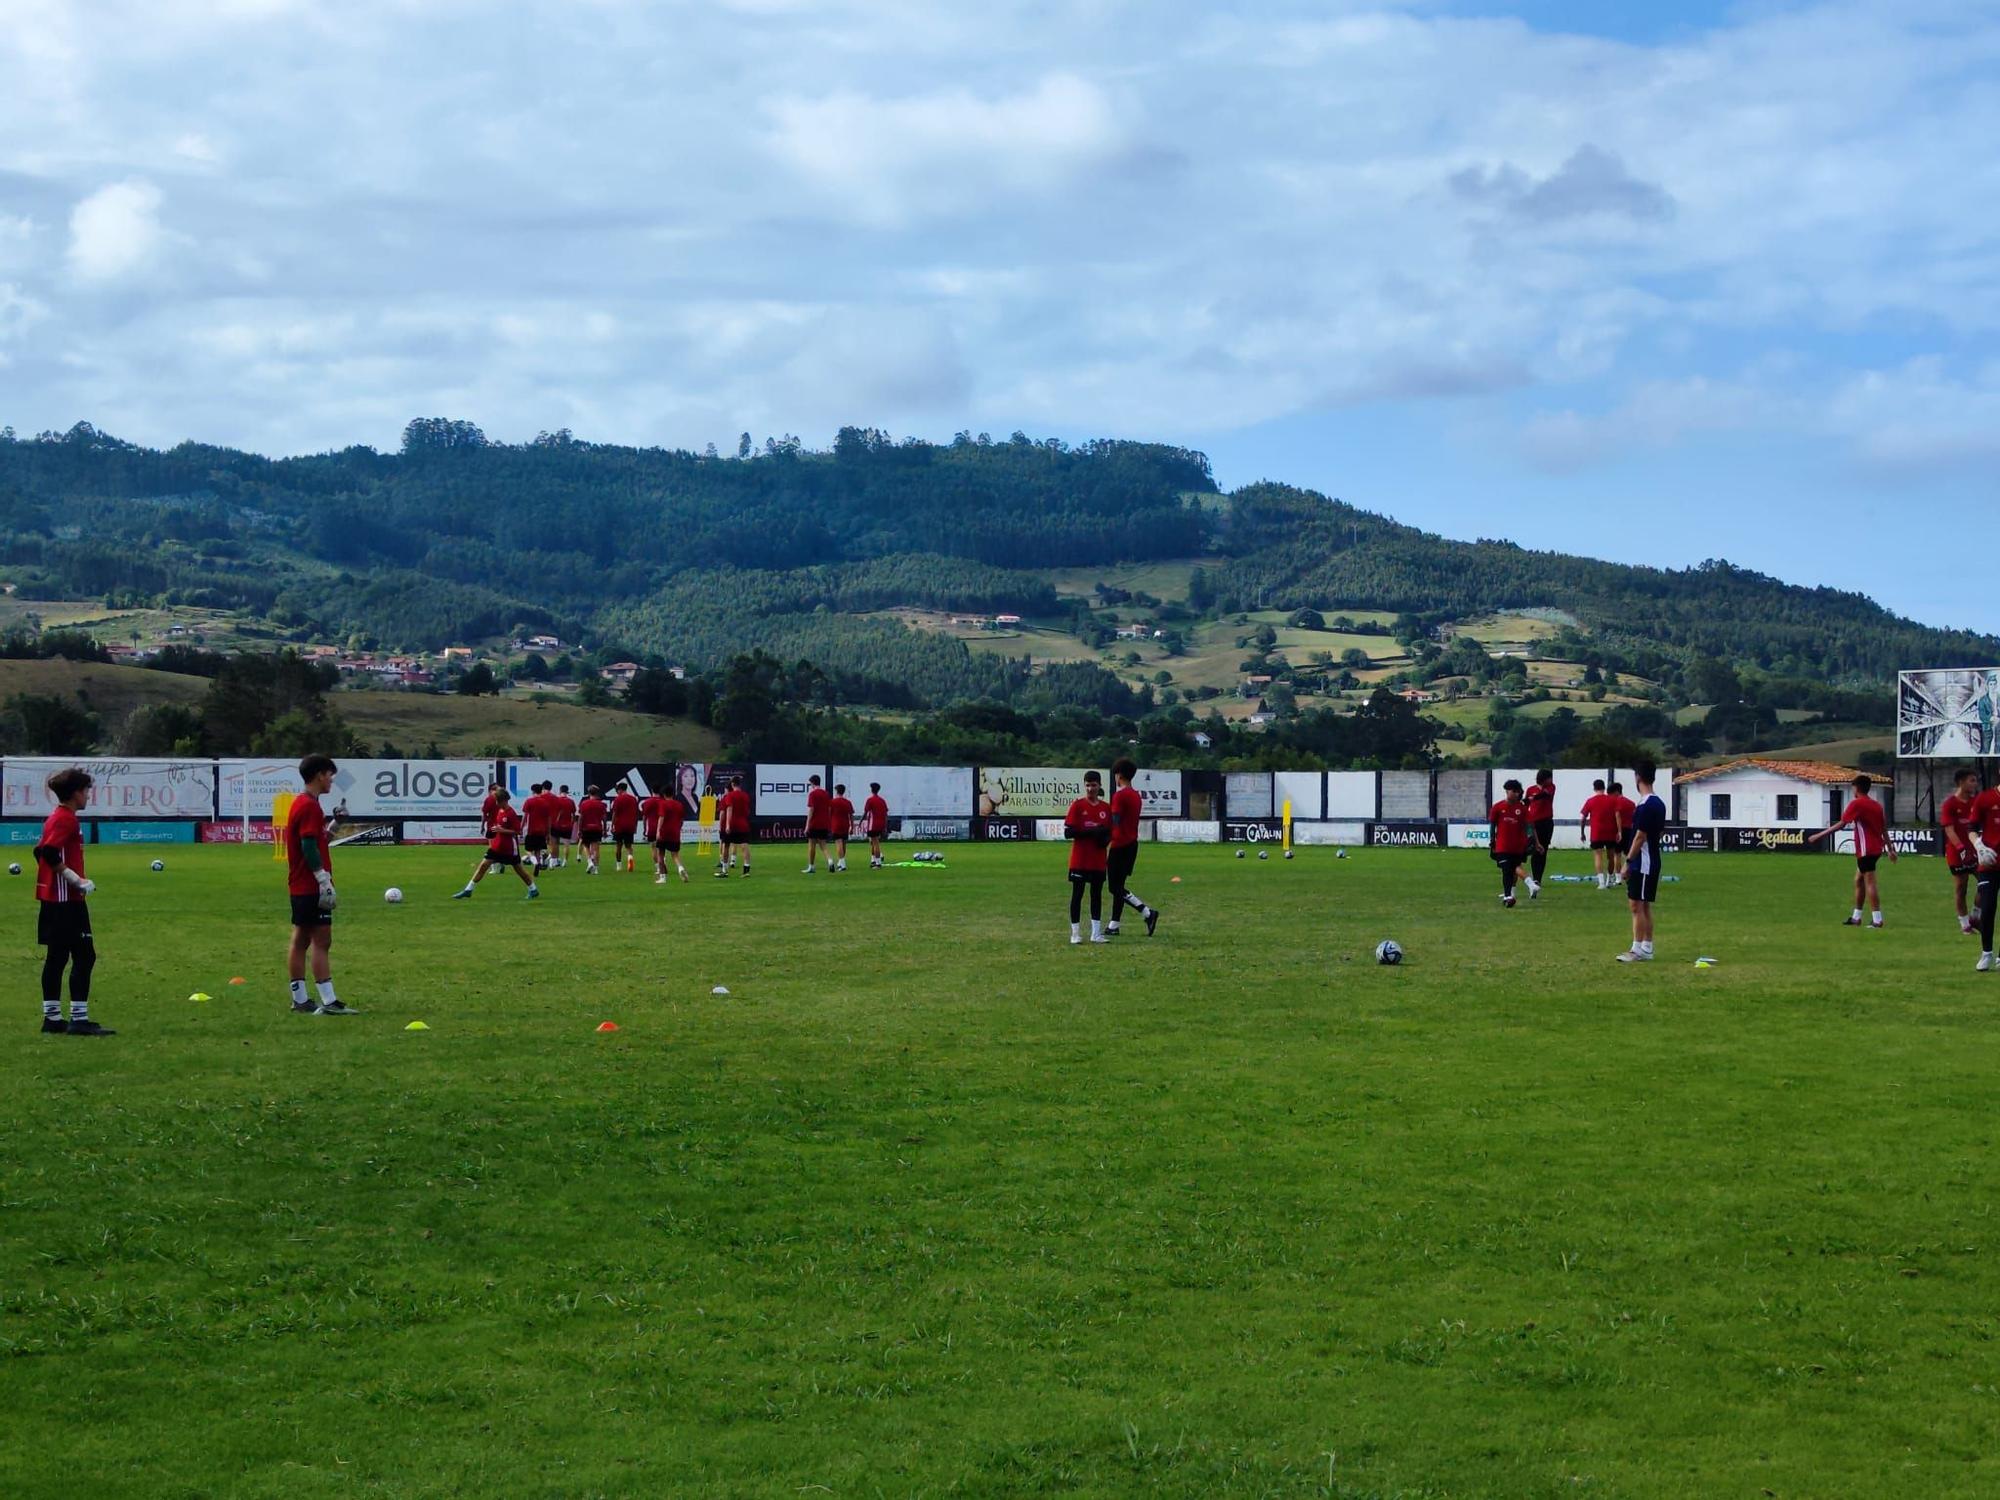 La cantera del fútbol profesional entrena en Villaviciosa: así es el campus de Marcelino García Toral